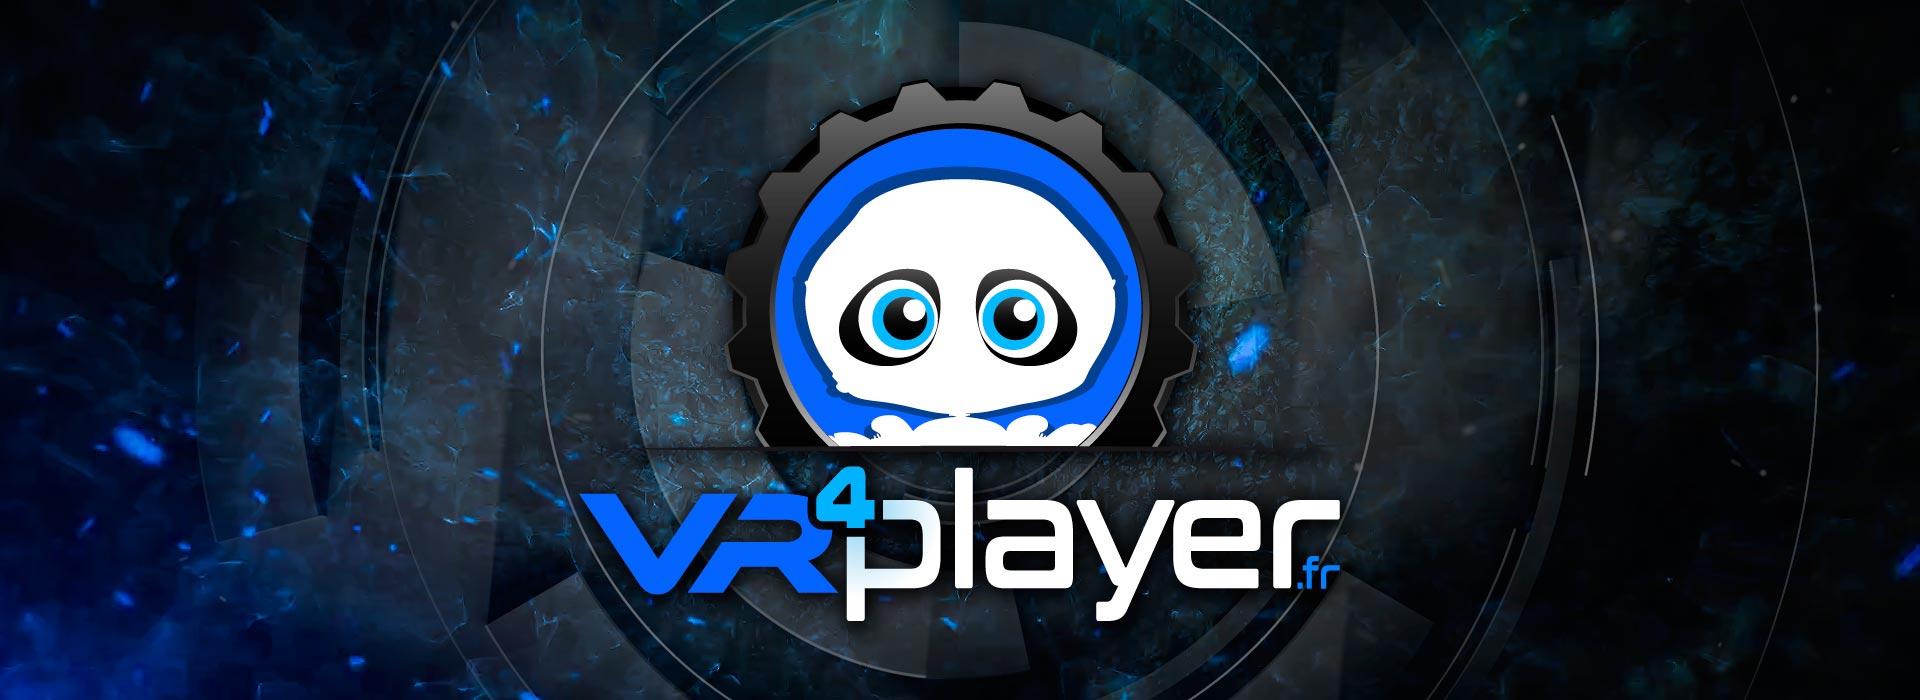 PSVR 2 PlayStation VR 2 Pro - Concept Design Trailer - VR4Player 